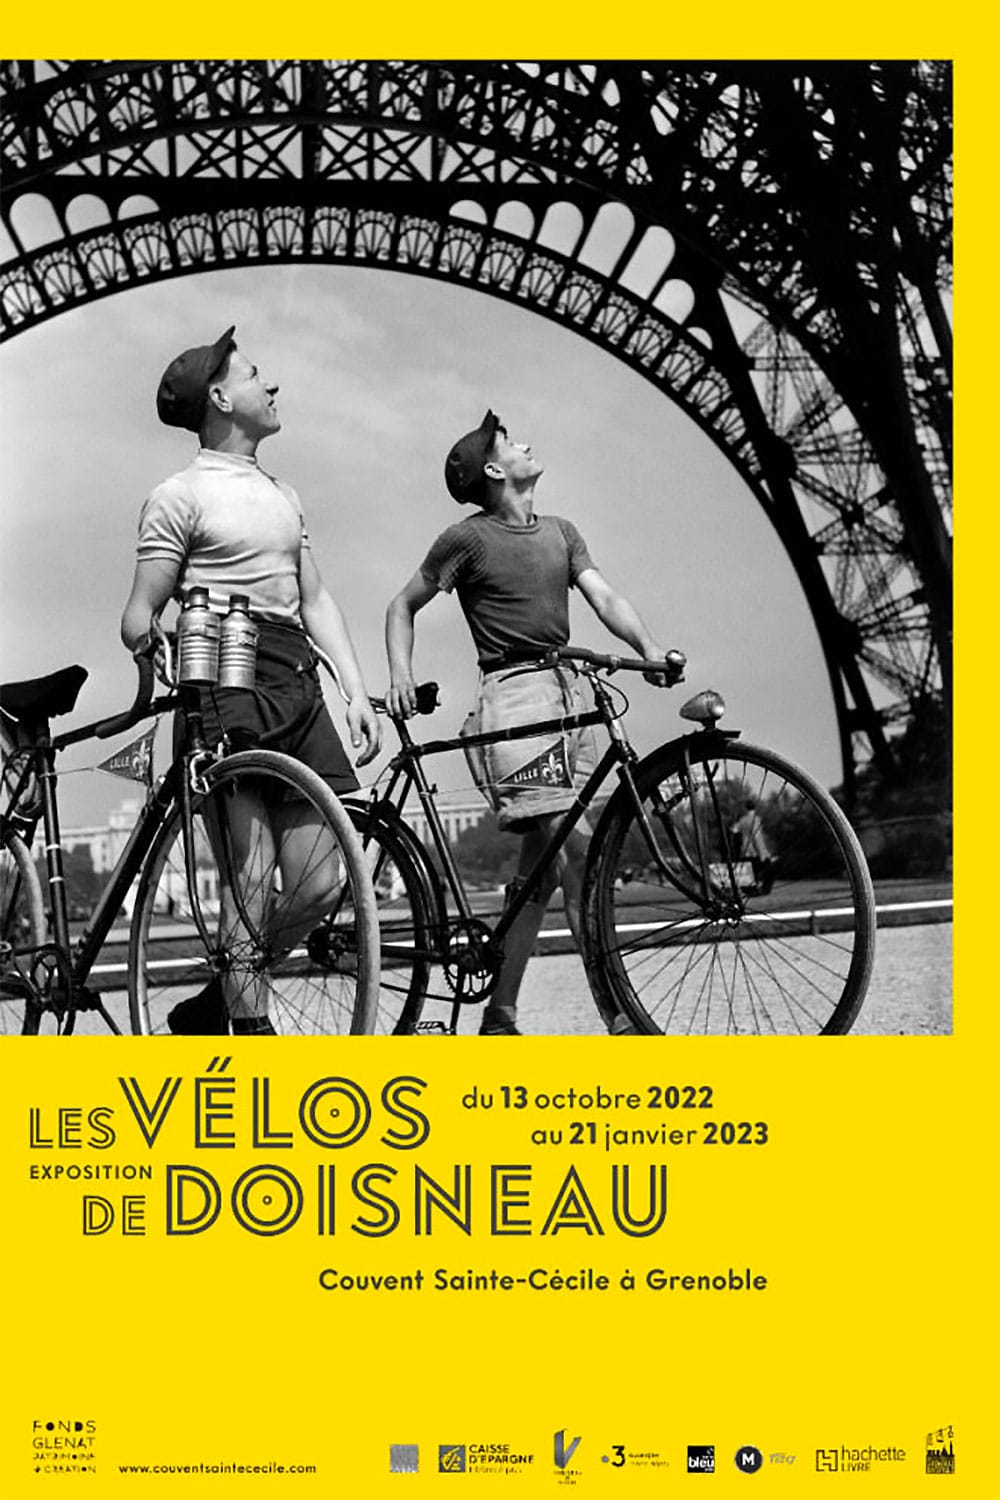 Exposition " Les vélos de Doisneau "